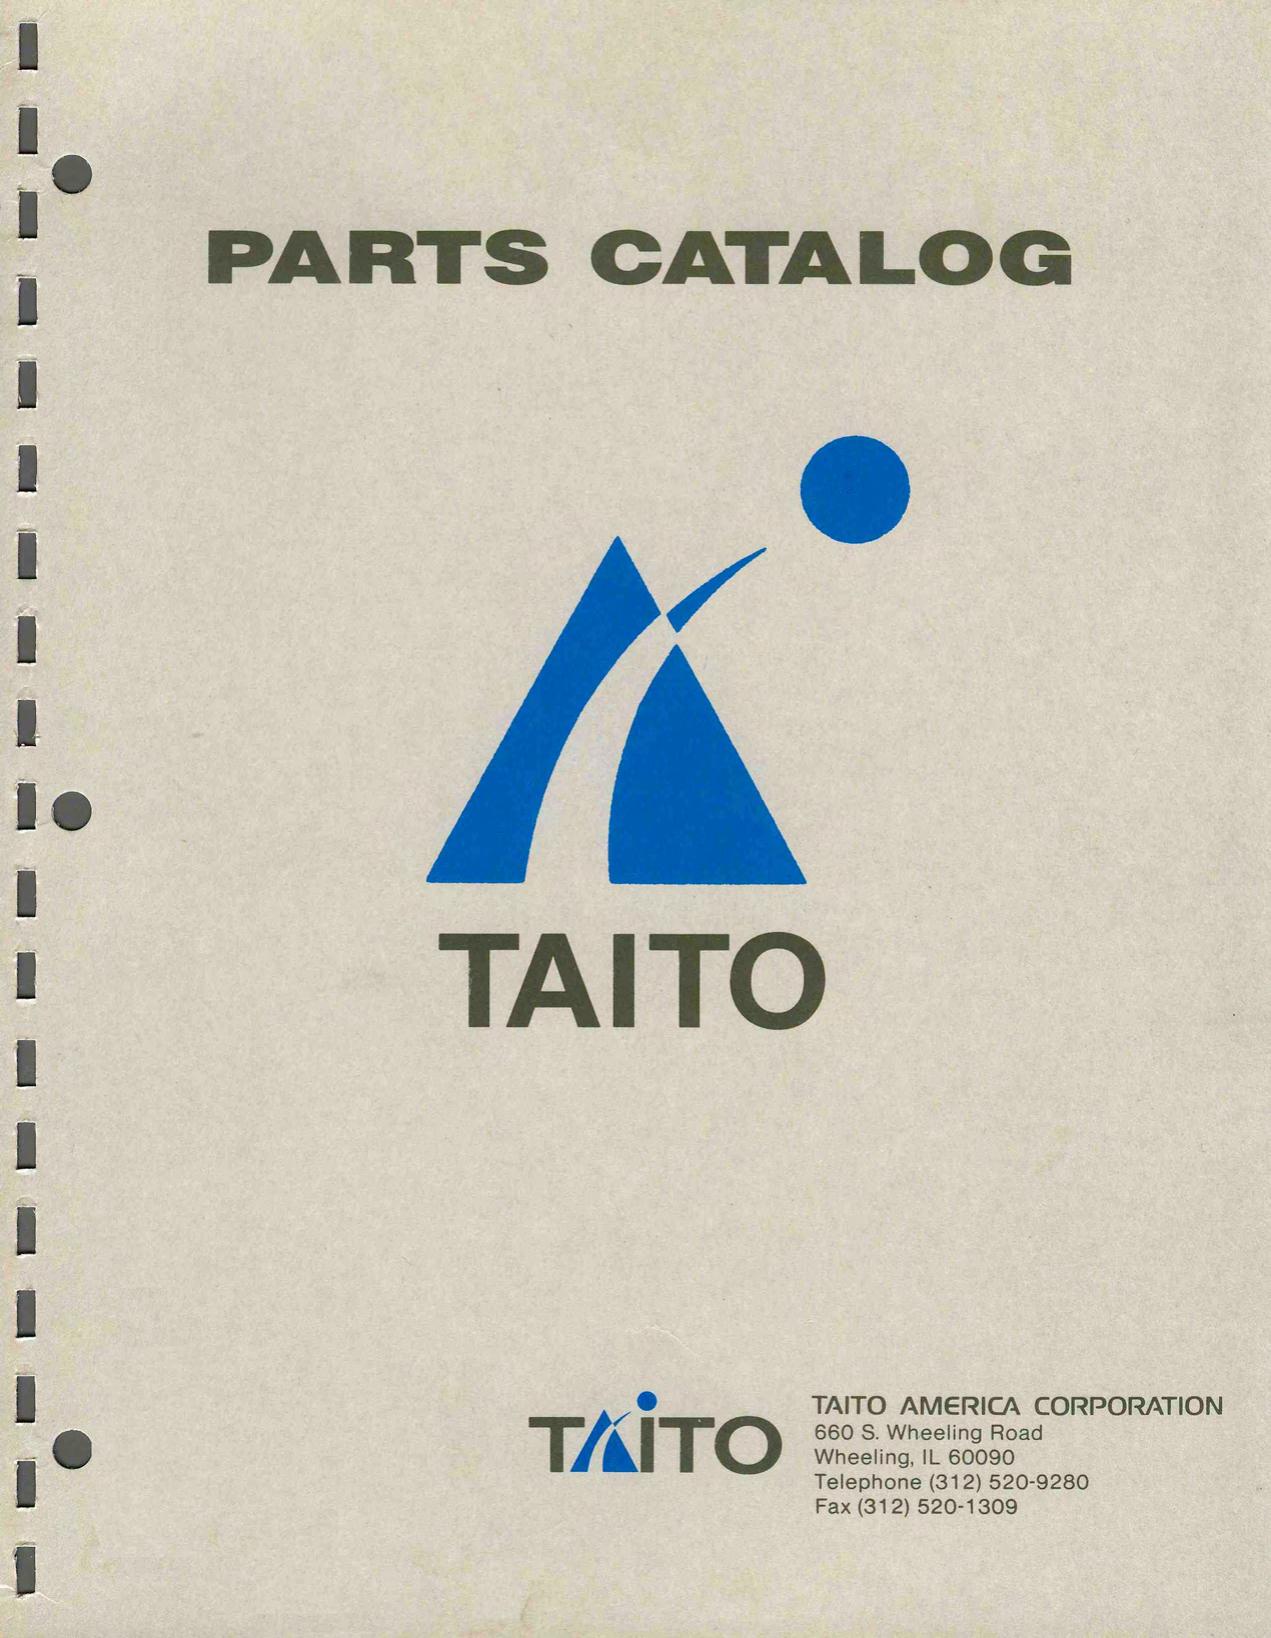 Taito Parts Catalog